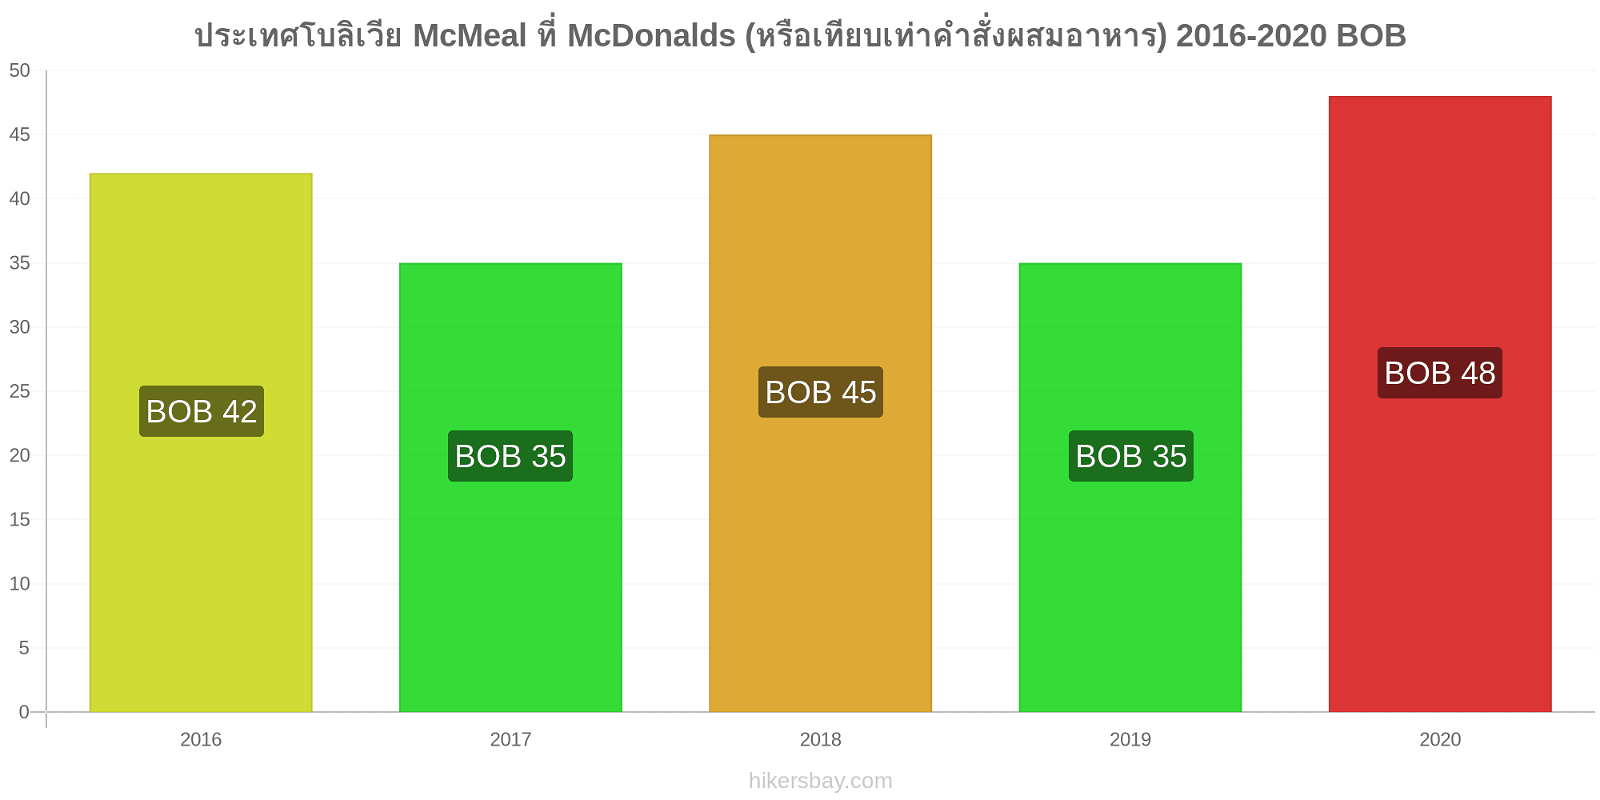 ประเทศโบลิเวีย การเปลี่ยนแปลงราคา McMeal ที่ McDonalds (หรือเทียบเท่าคำสั่งผสมอาหาร) hikersbay.com